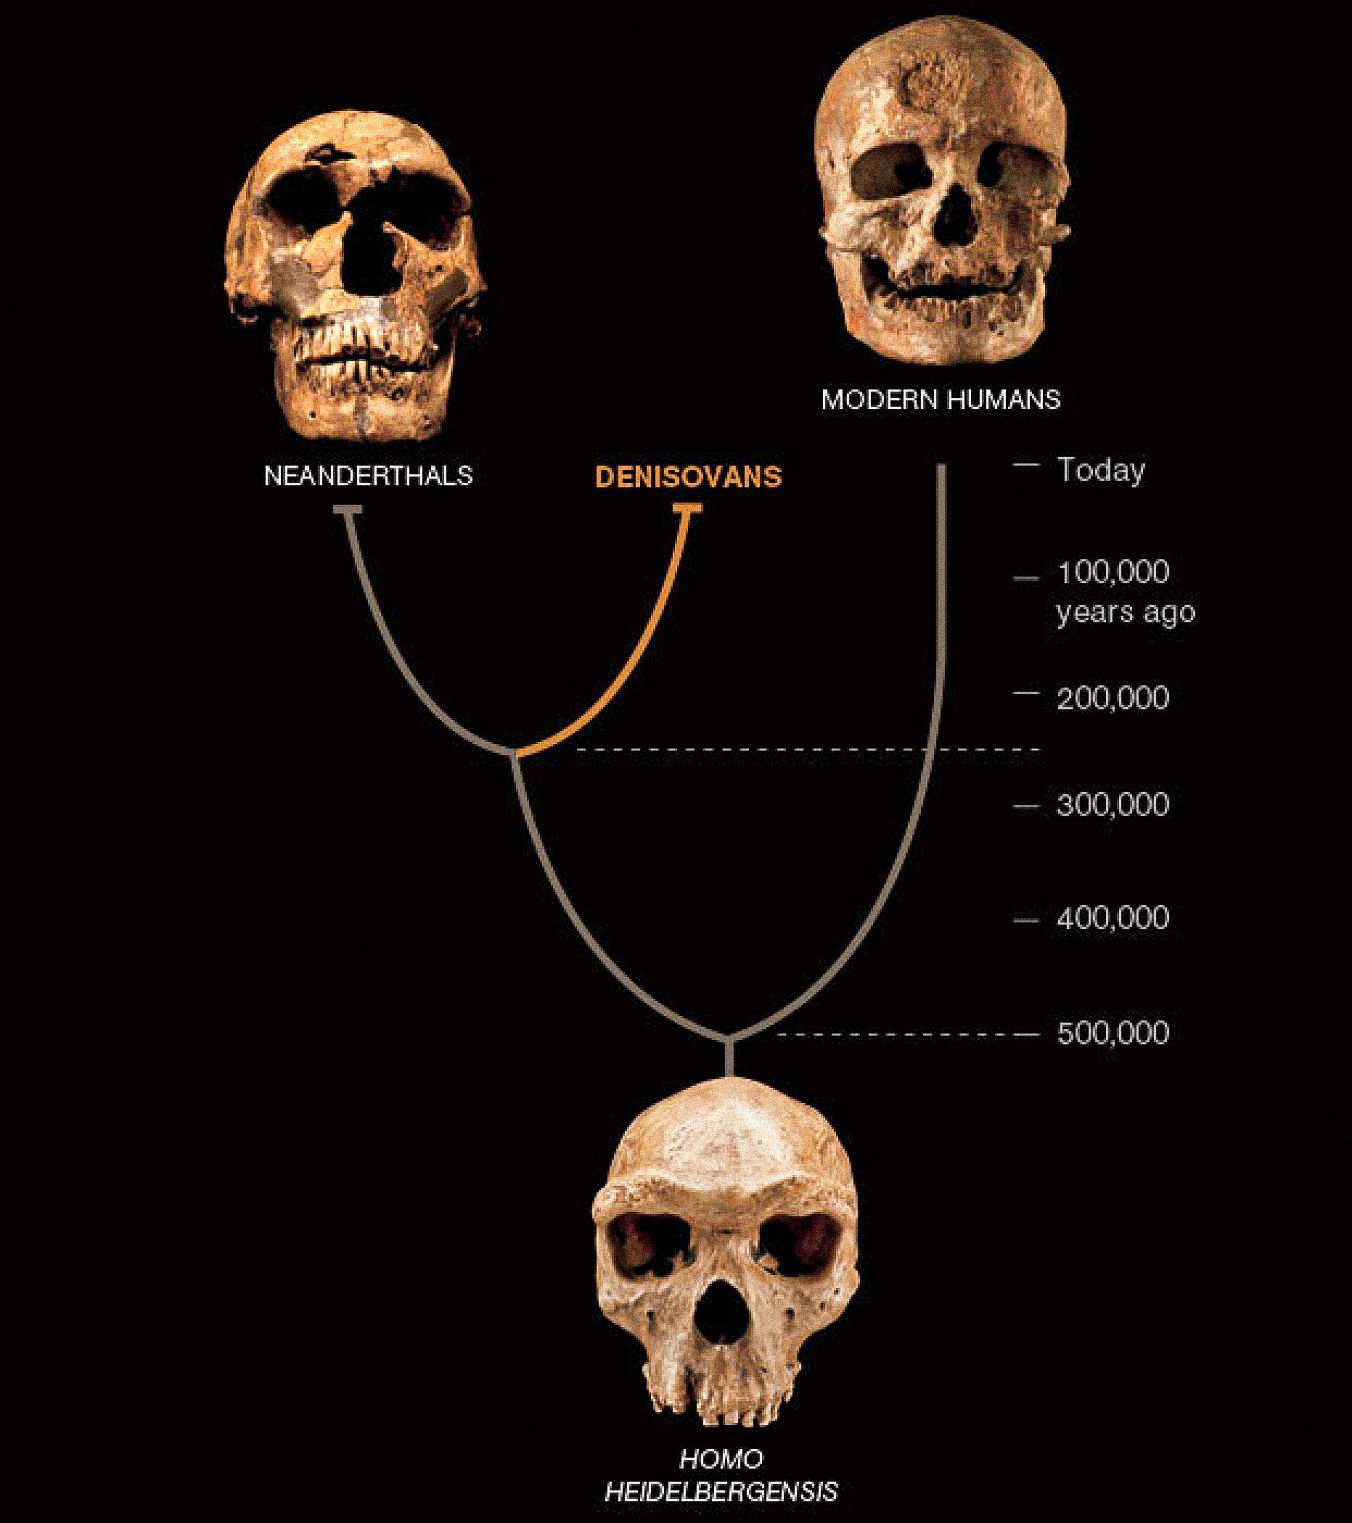 Një lloj i tretë i njeriut, i quajtur Denisovans, duket se ka bashkëjetuar në Azi me Neandertalët dhe njerëzit e hershëm modernë. Këto dy të fundit njihen nga fosile dhe objekte të bollshme. Denisovanët janë përcaktuar deri më tani vetëm nga ADN-ja nga një çip kocke dhe dy dhëmbë - por zbulon një kthesë të re në historinë njerëzore.